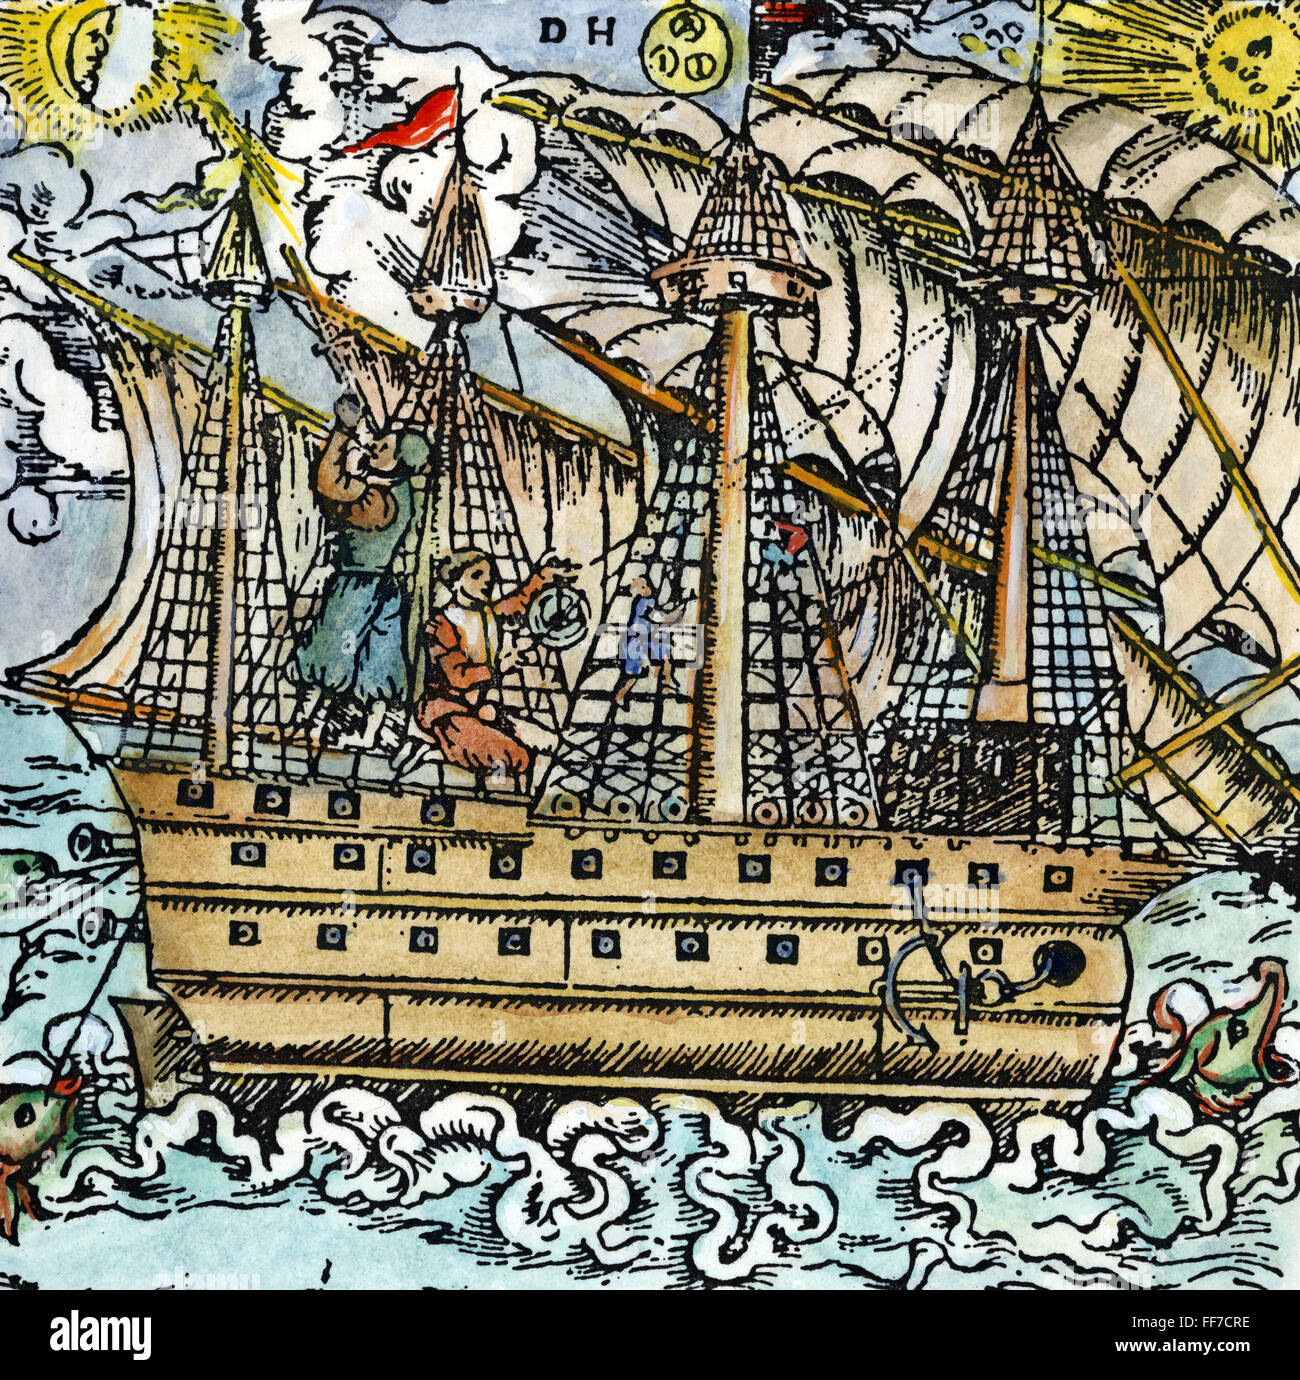 Les marins Observation, 1557. /NMariners sur une observation d'étoiles avec un personnel (à gauche) et sur le soleil avec un astrolabe. Gravure sur bois allemande, 1557. Banque D'Images